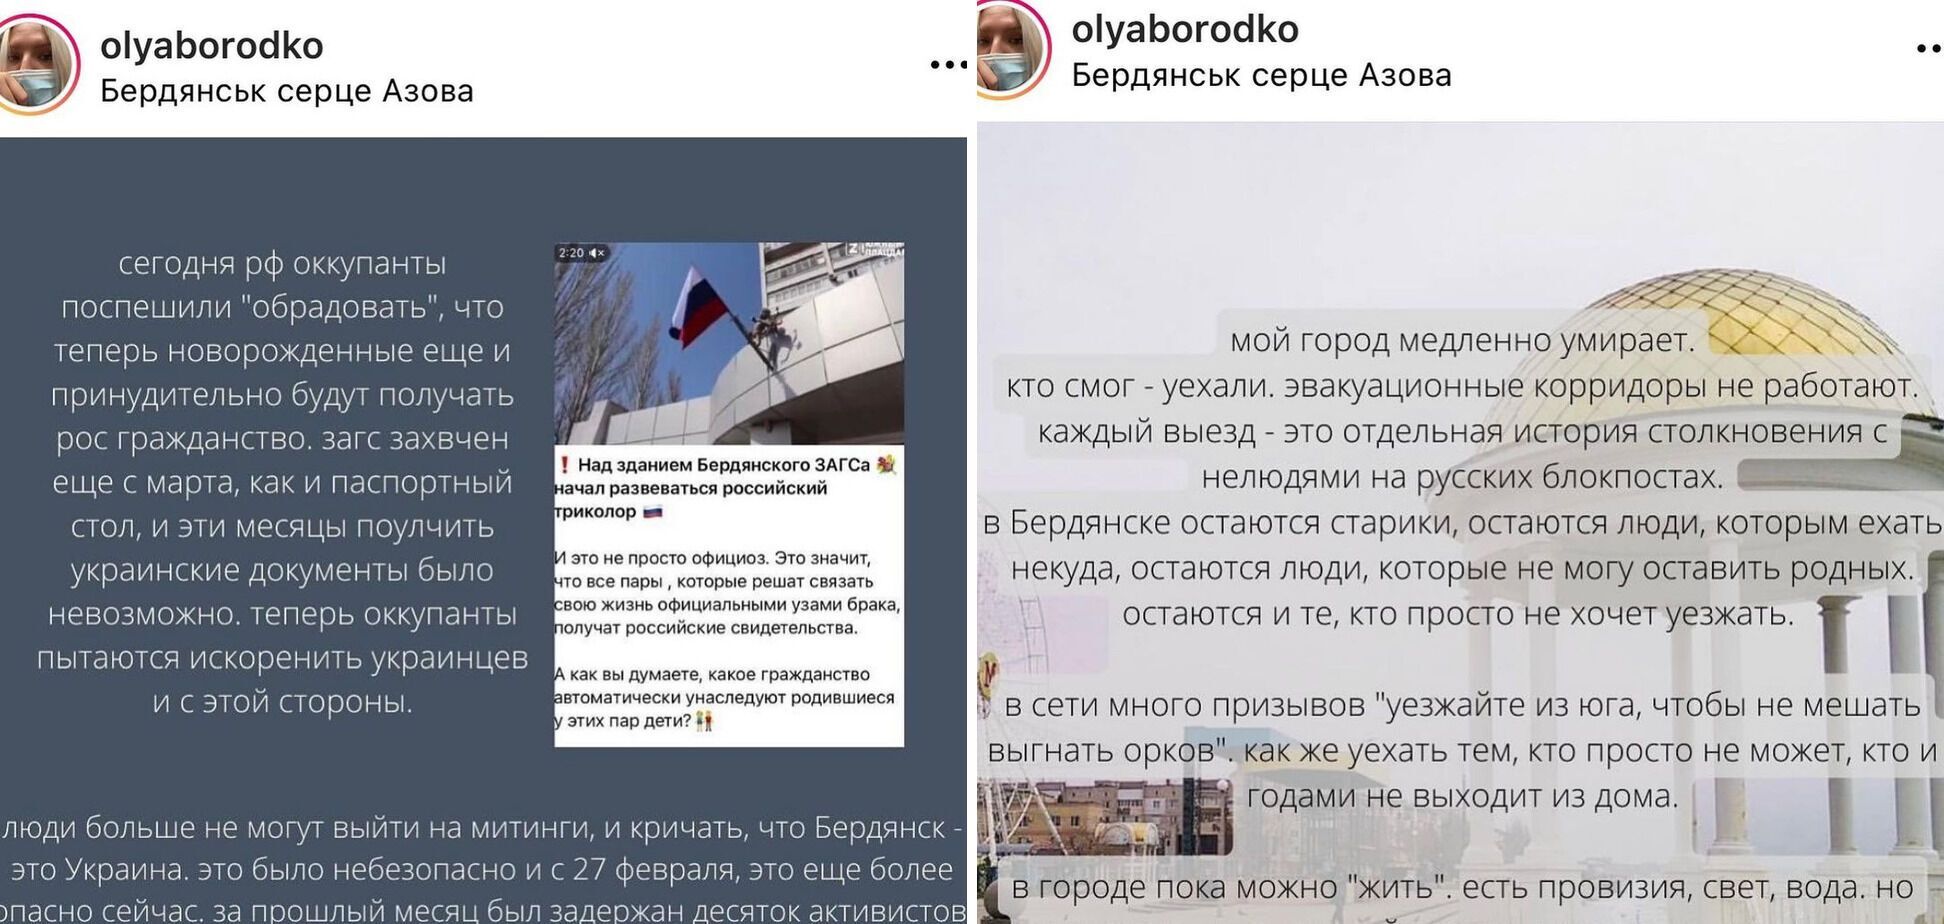 Скриншоти пропагандистських матеріалів та розповіді українців.